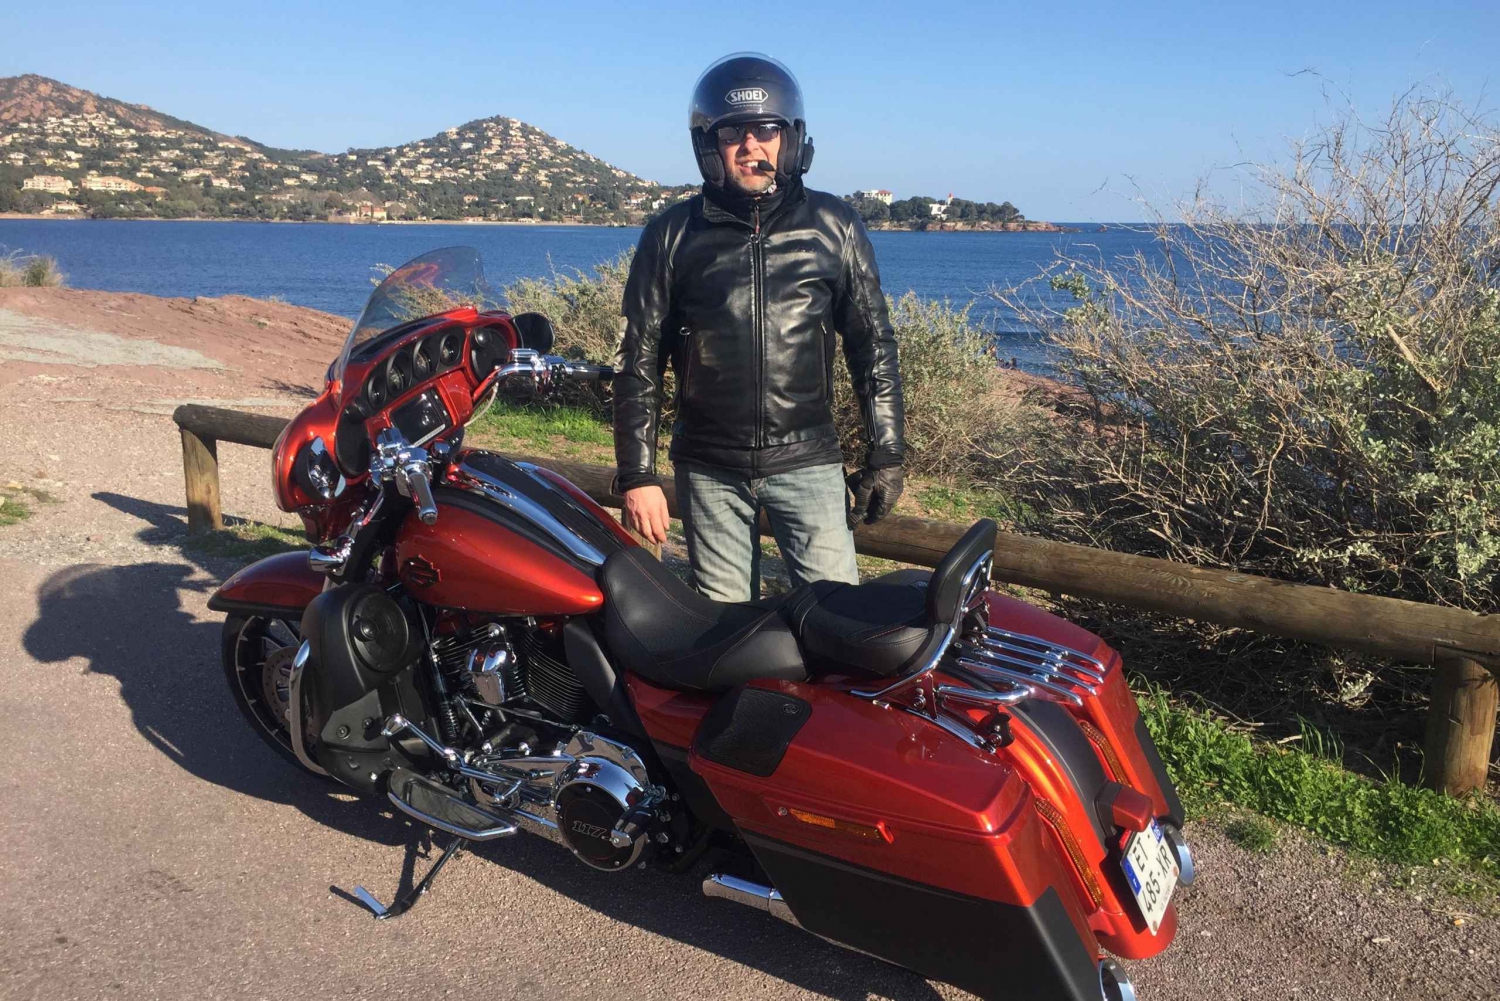 Harley Davidson passagier Tour met gids rond de wegen van Cannes